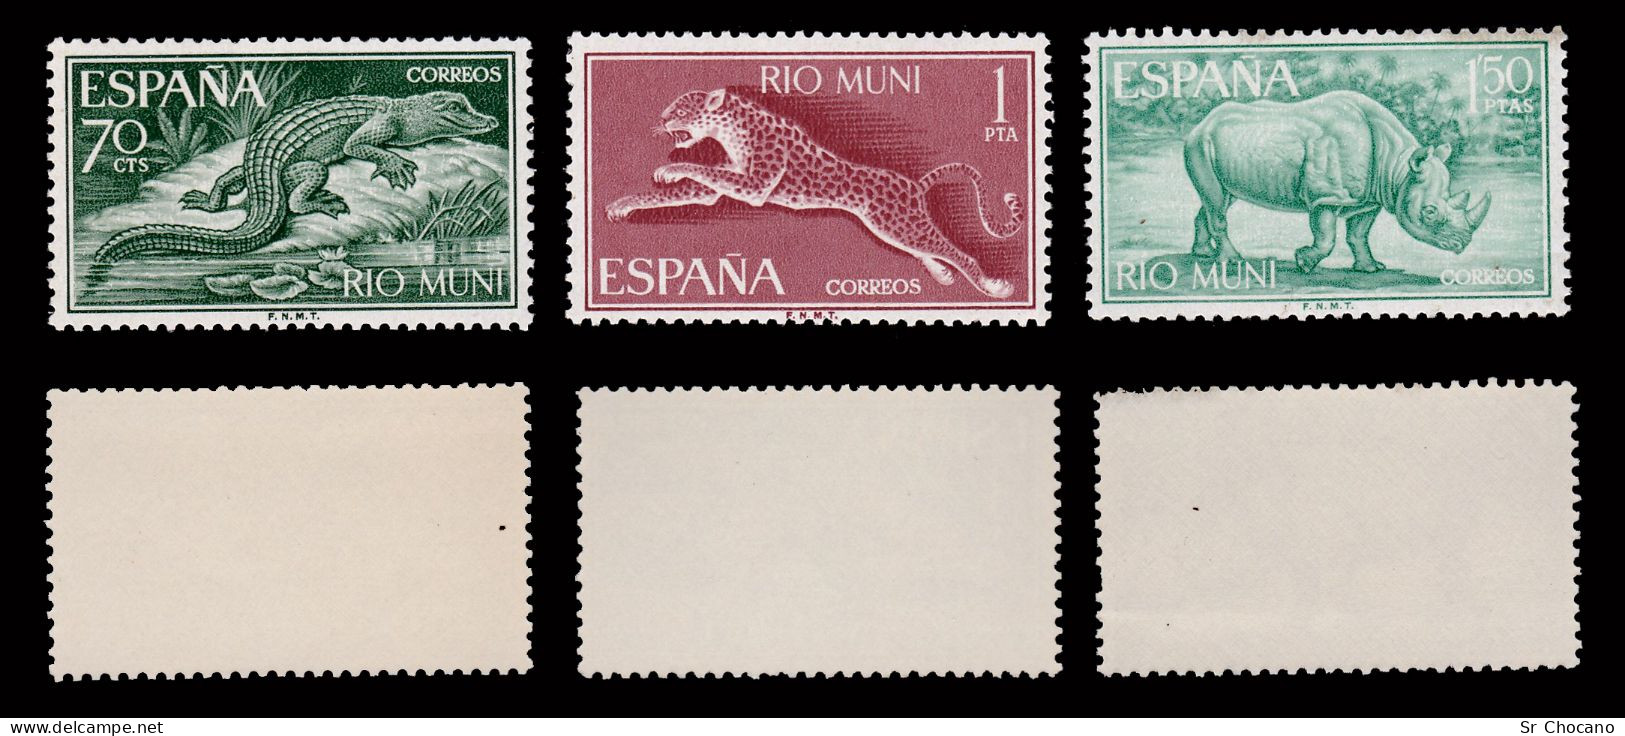 RIO MUNI.1964.Fauna Ecuatorial.Serie.MNH.Blq 2.Edifil 48-56 - Rio Muni